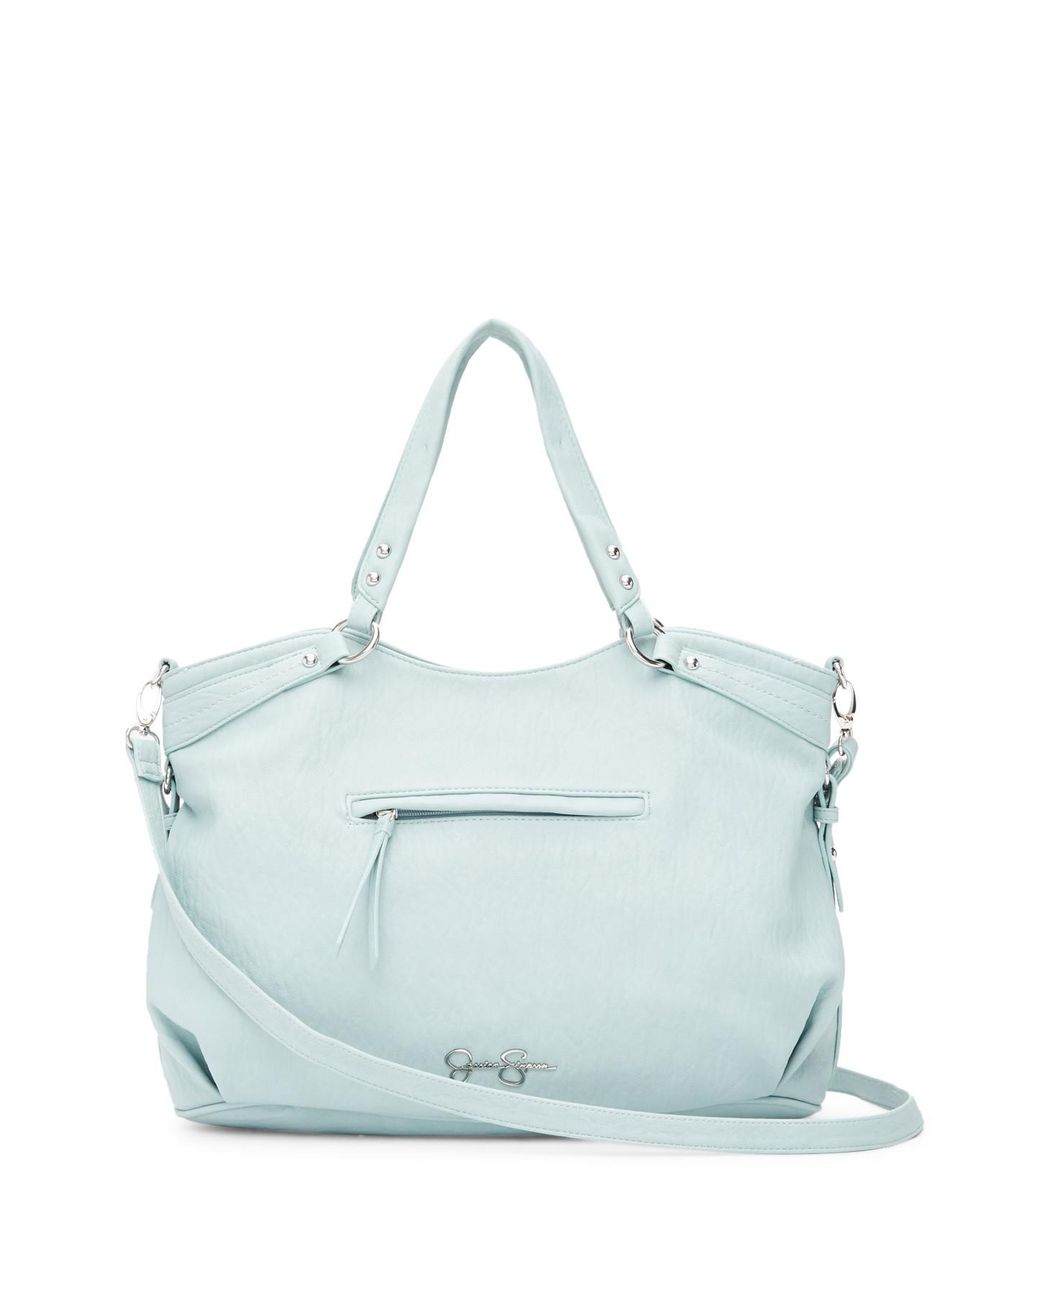 Light grey Jessica Simpson handbag  Jessica simpson handbags, Handbag  shopping, Handbag